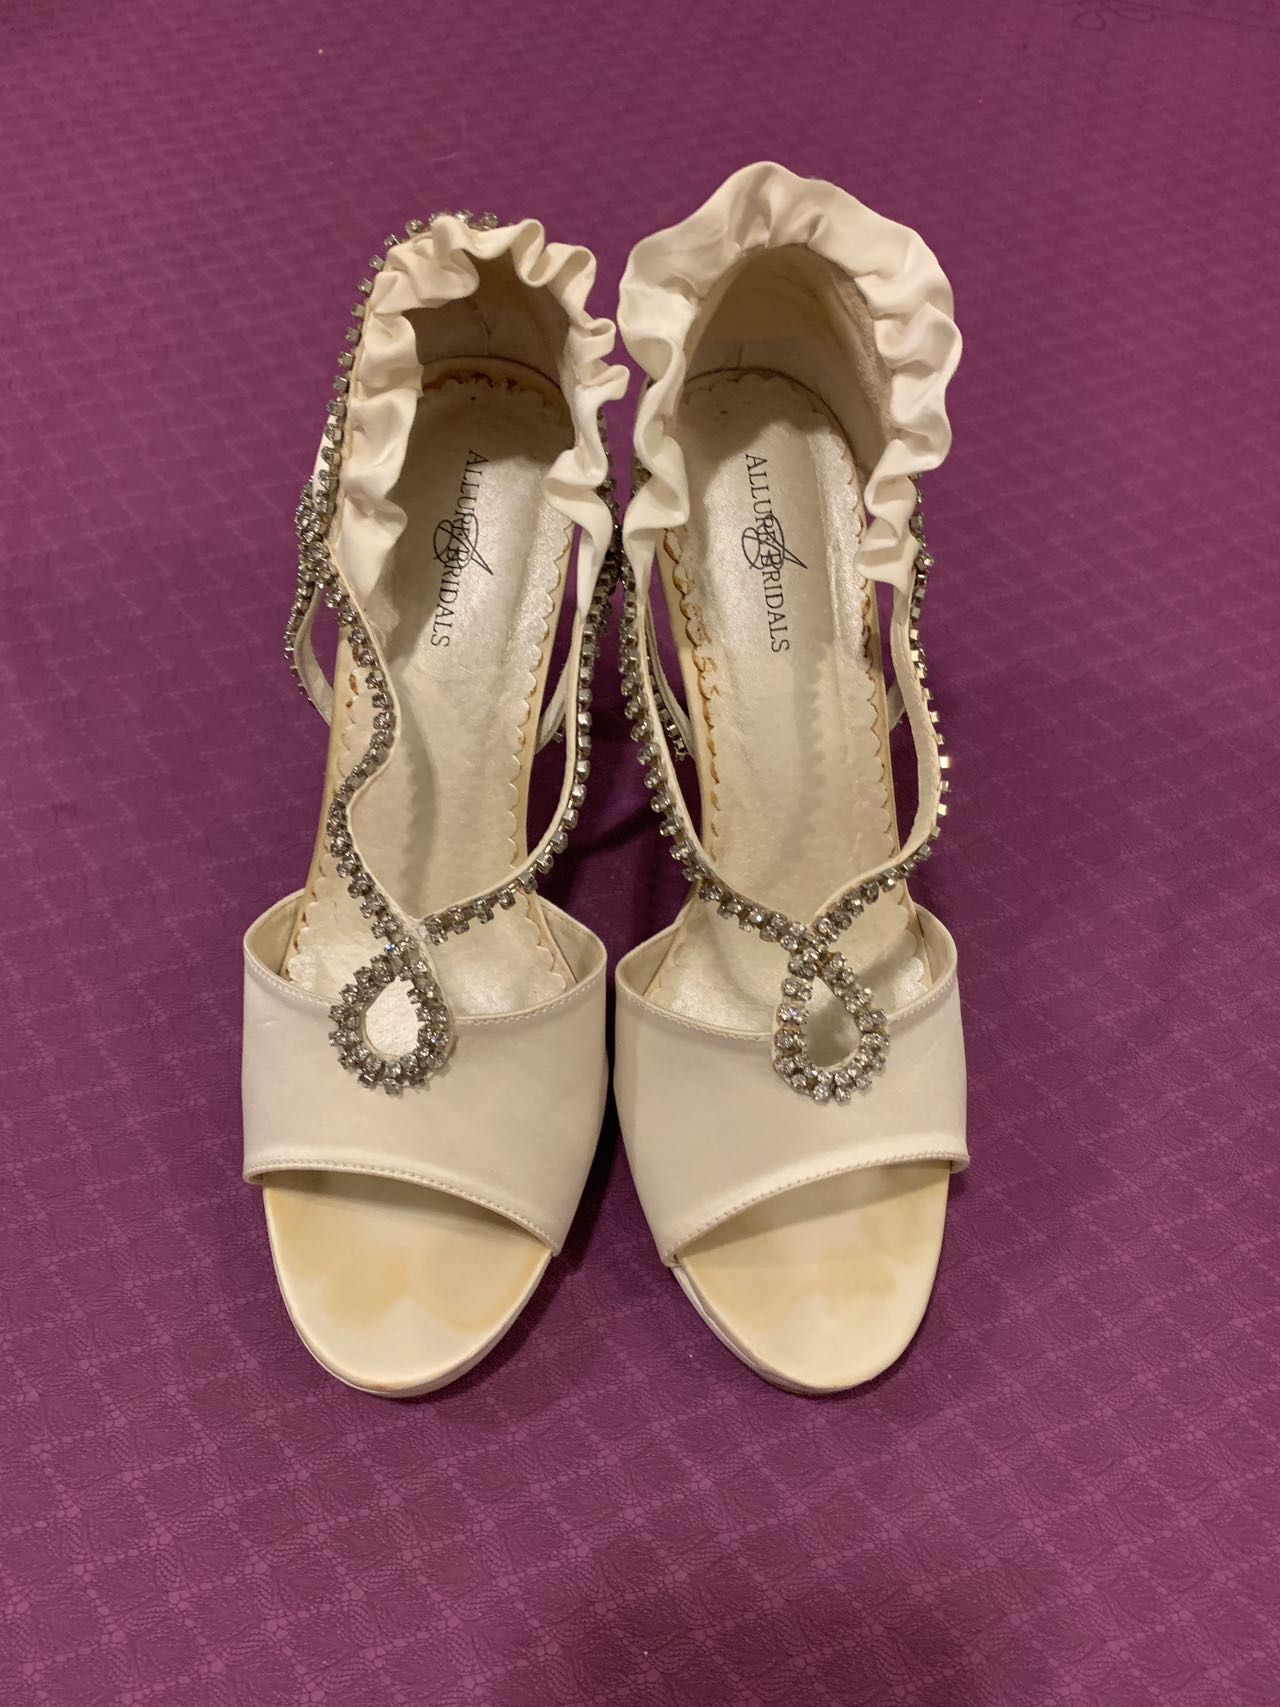 Allure Bridal Shoes Size 8